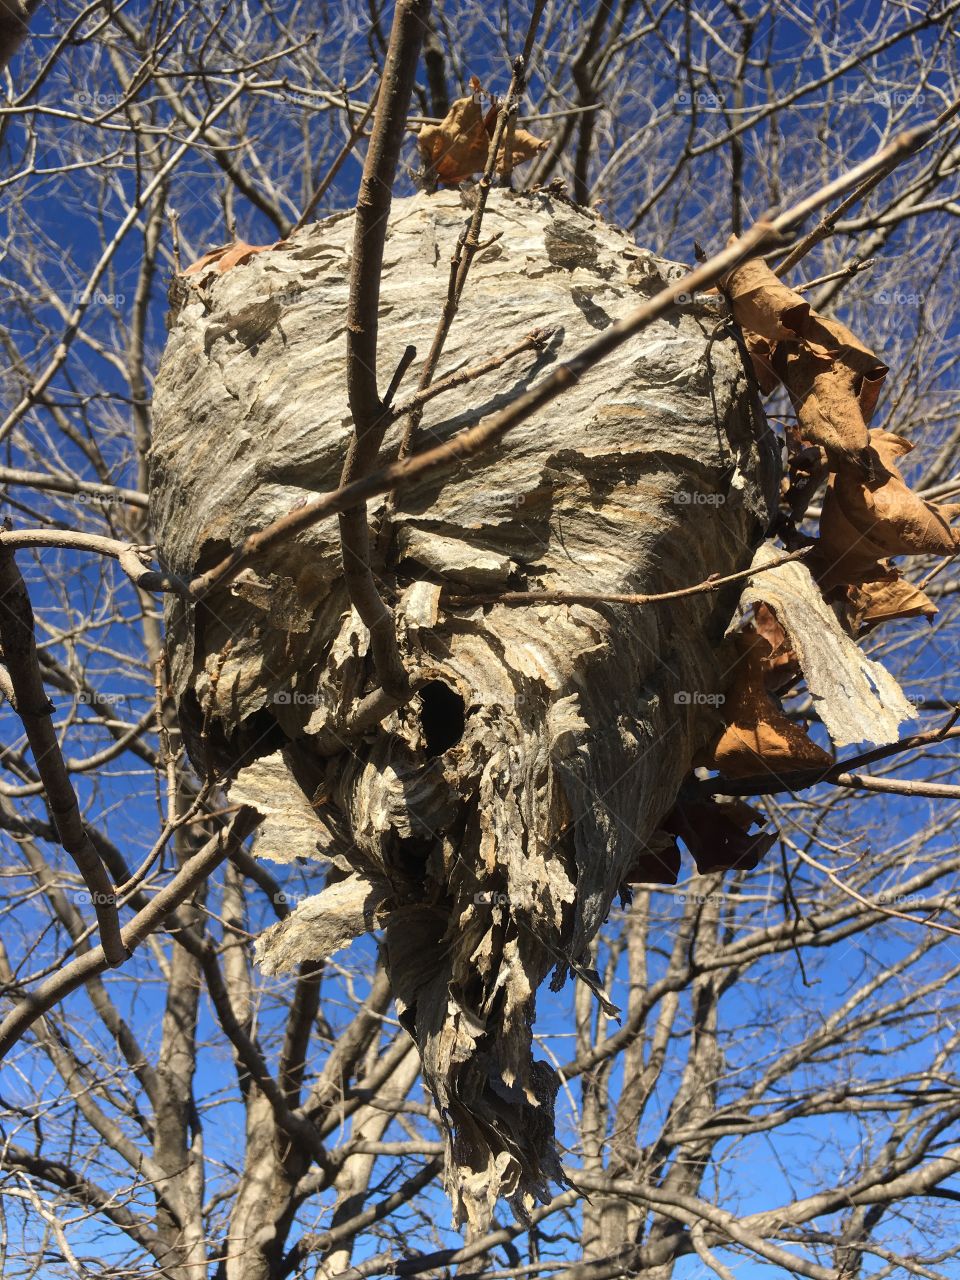 Hornet's nest in fall